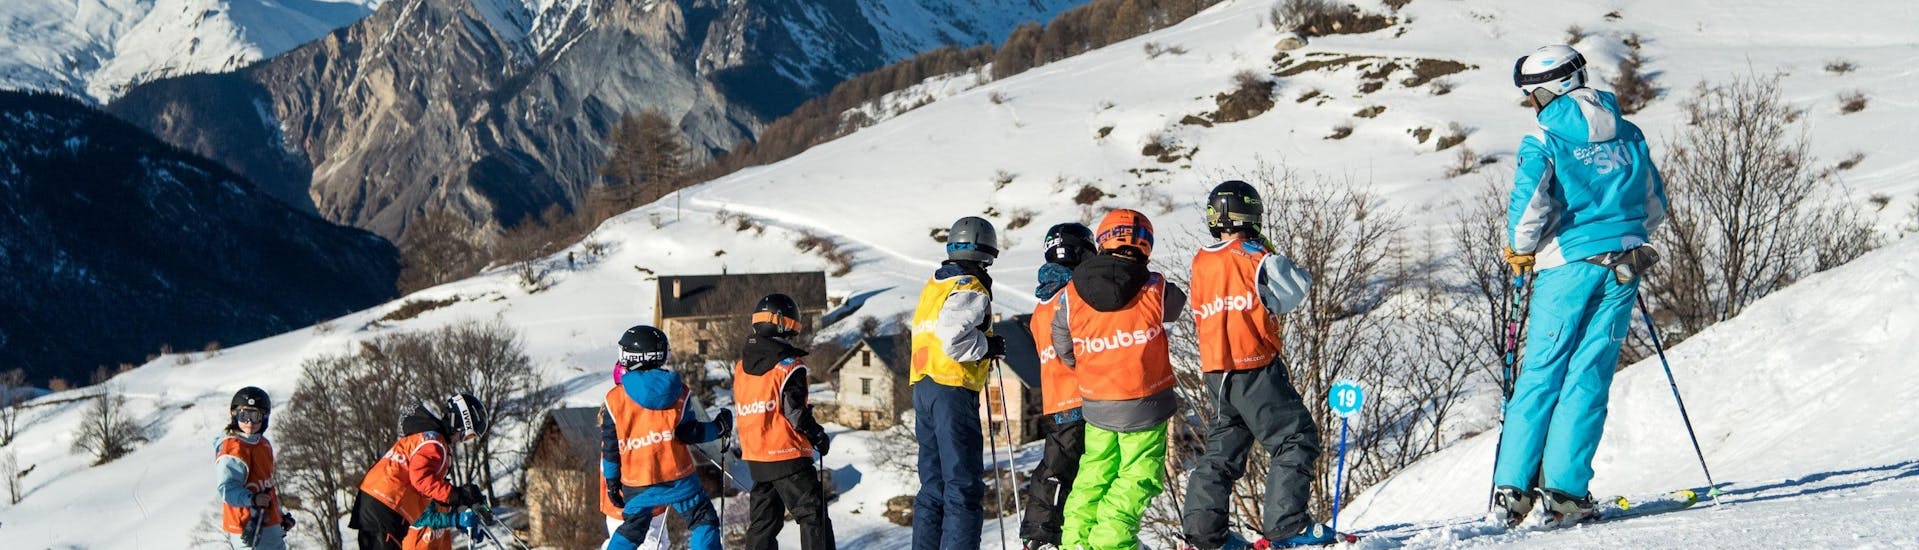 Clases de esquí para niños a partir de 8 años para principiantes.